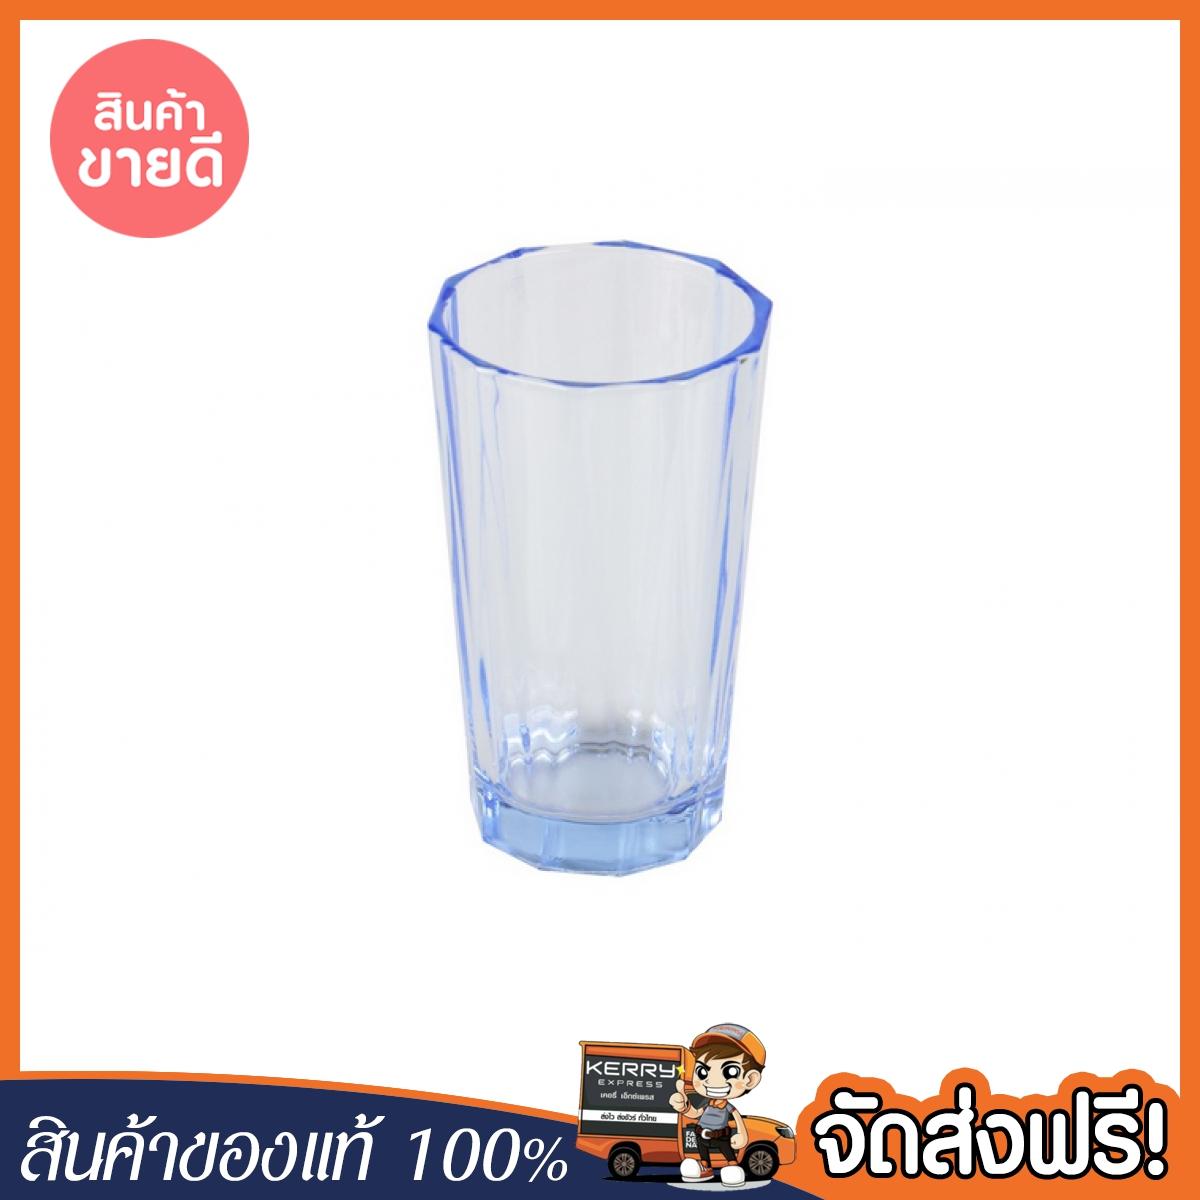 [จัดส่งฟรี] TUMBLE GLASS GLASS BLUE แก้วน้ำ 9.5oz แพ็ค 4 ใบ RIPPLE BEAM ฟ้า ของแท้ โปรโมชั่นพิเศษ สินค้าพร้อมจัดส่ง